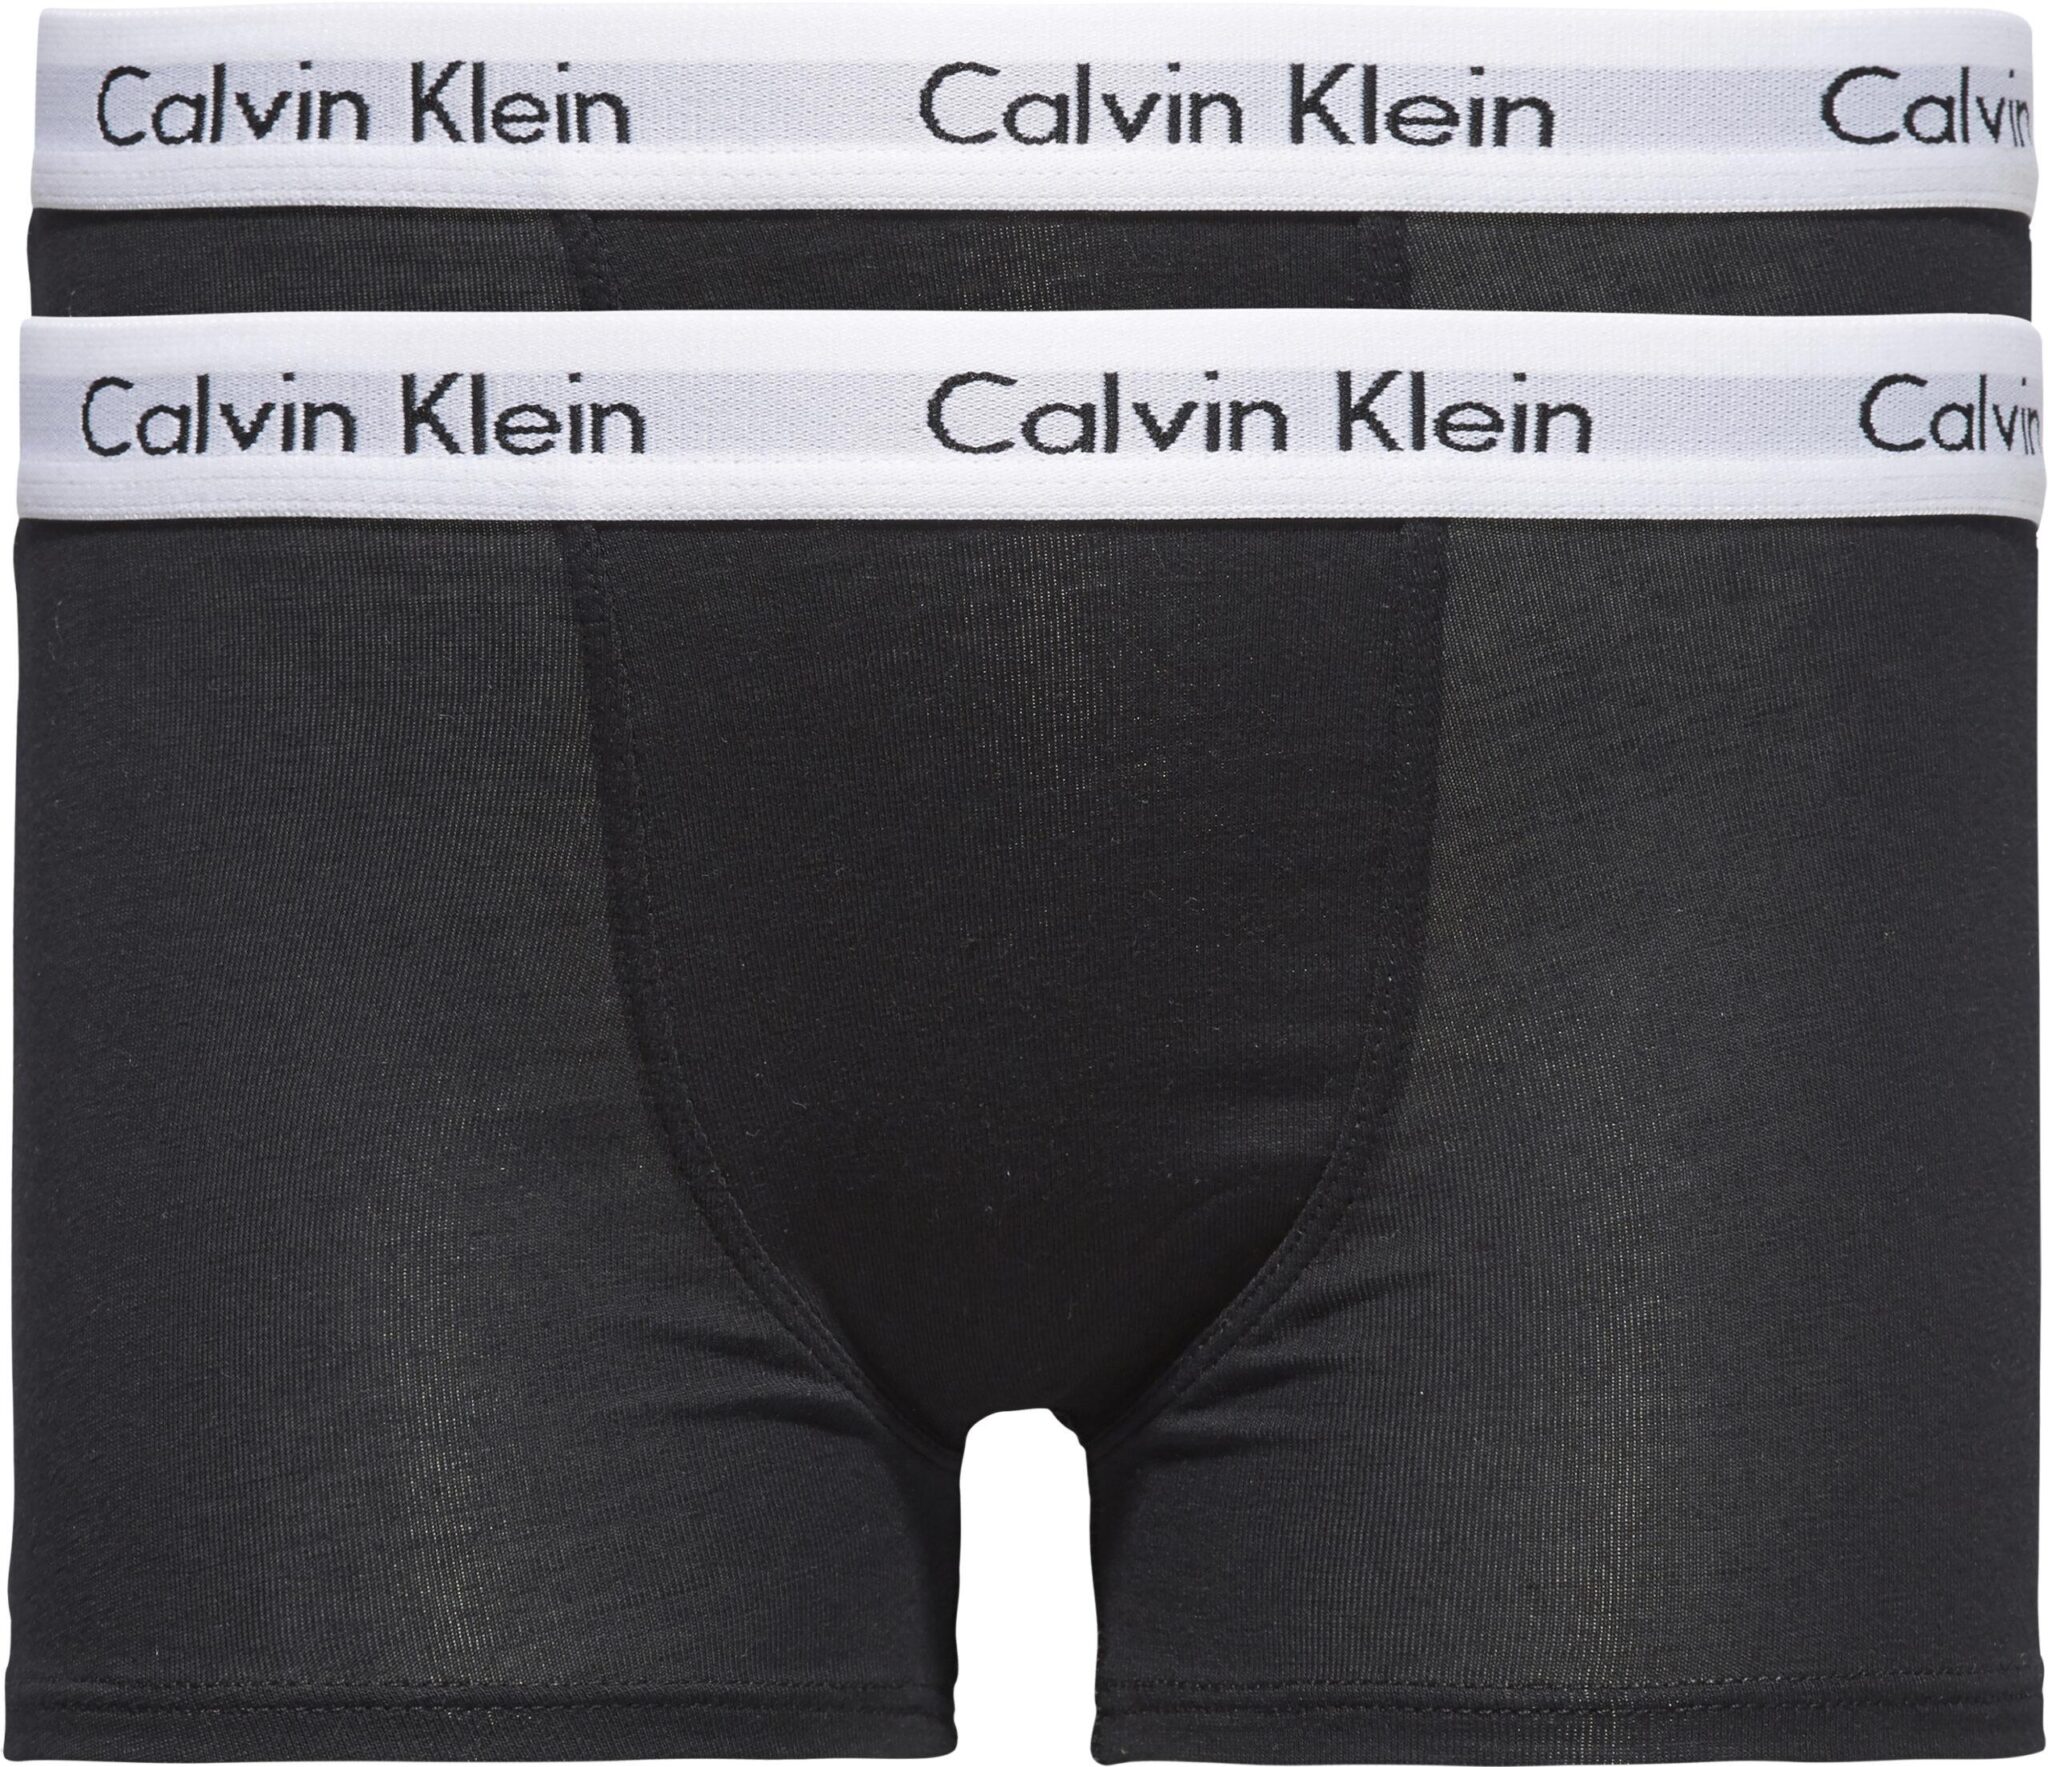 Calvin Klein Underwear Black Modern Cotton Boy Shorts Calvin Klein Underwear